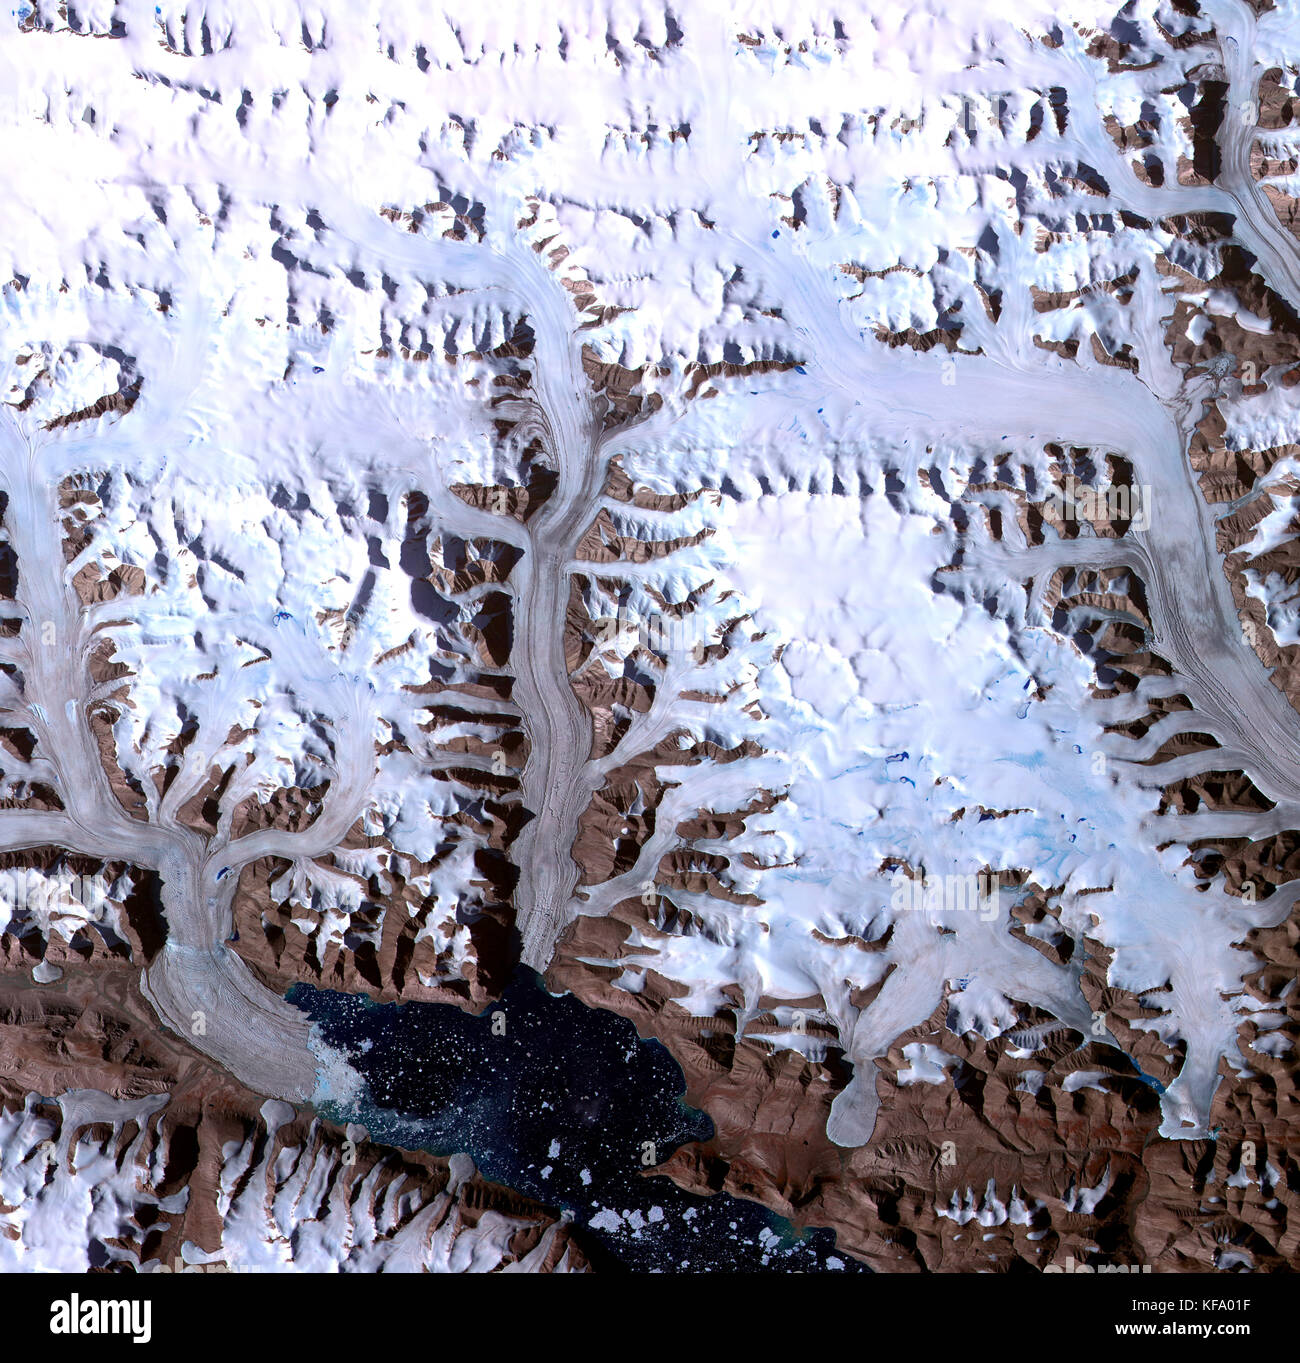 Dobbin Bay se trouve au bas de cette image de plusieurs glaciers dans l'Arctique canadien sur l'île d'Ellesmere. L'image a été prise le 31 juillet 2000. Banque D'Images